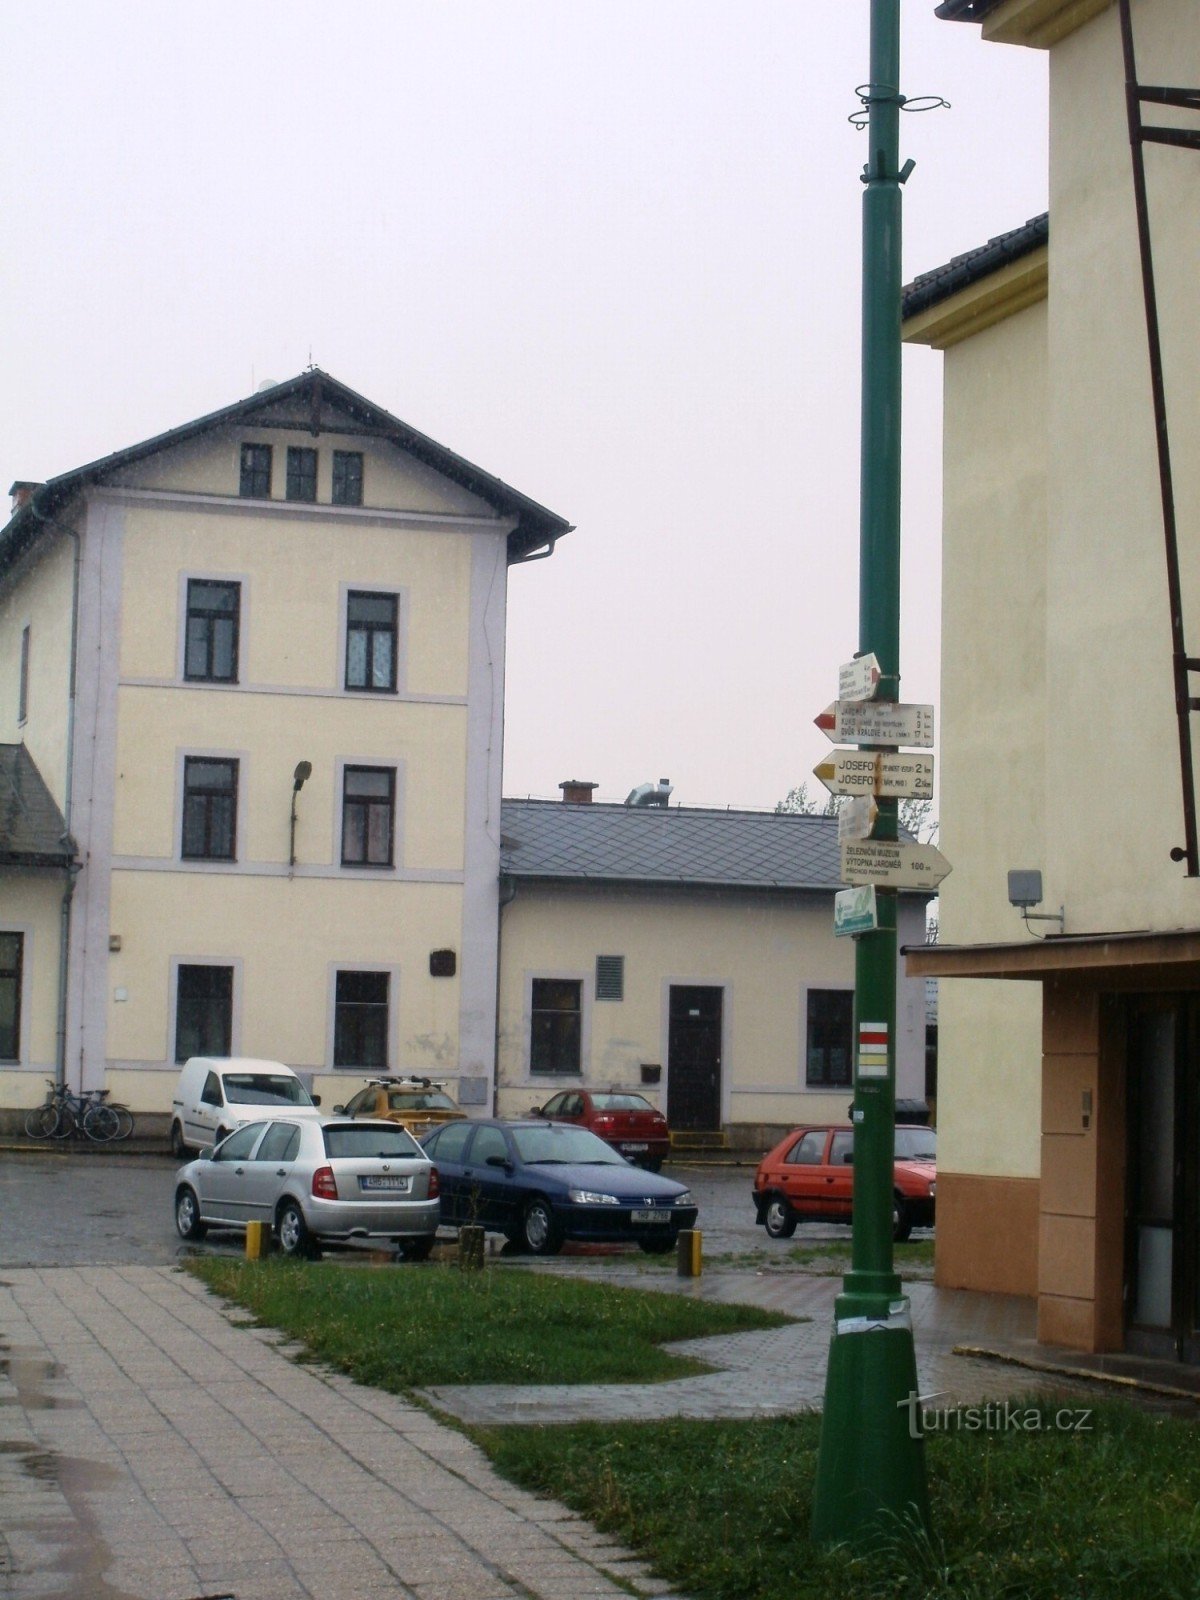 rozdroże turystyczne Jaroměř - kolej, stacja kolejowa